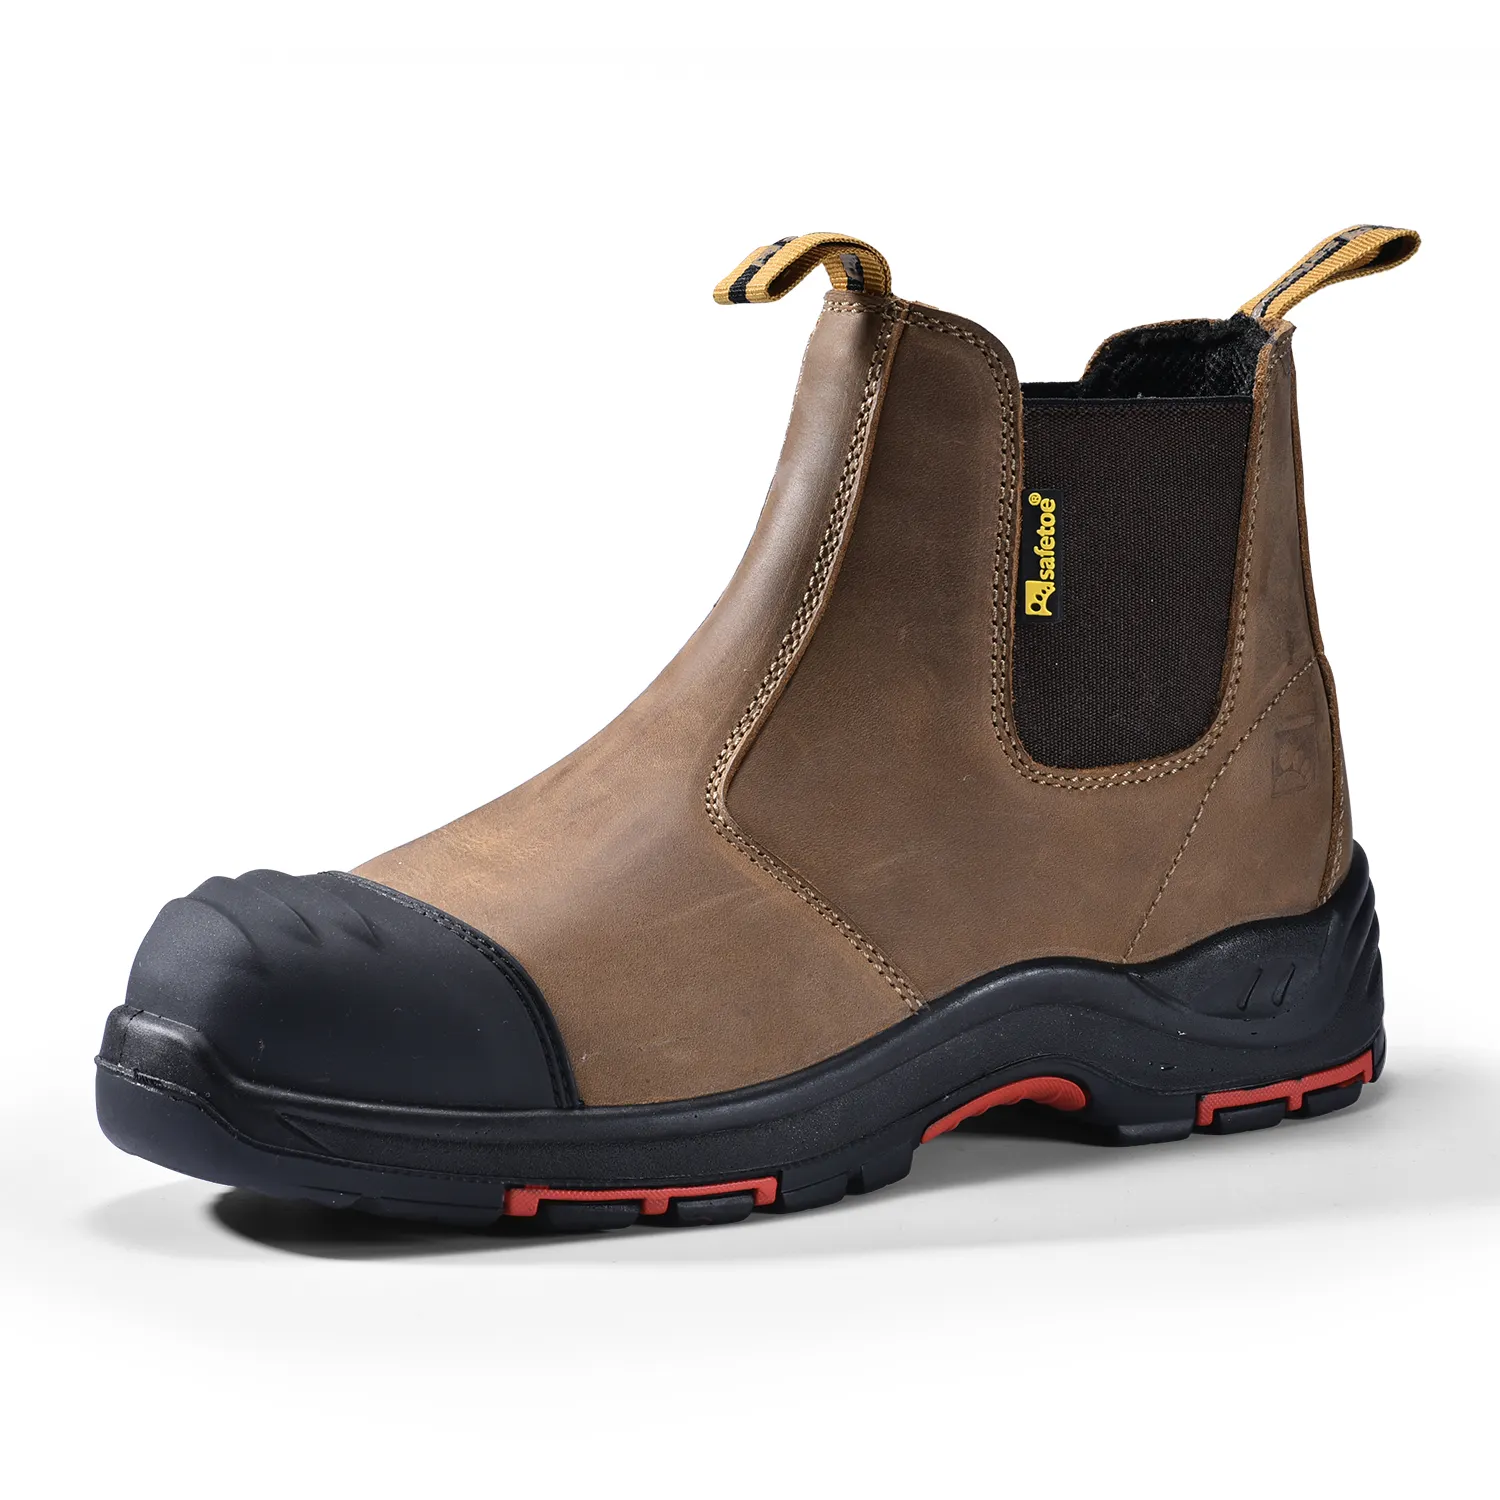 Não metal indústria do petróleo Workplace trabalho sapatos durável anti derrapante borracha sola S3 SRC segurança trabalho sapatos